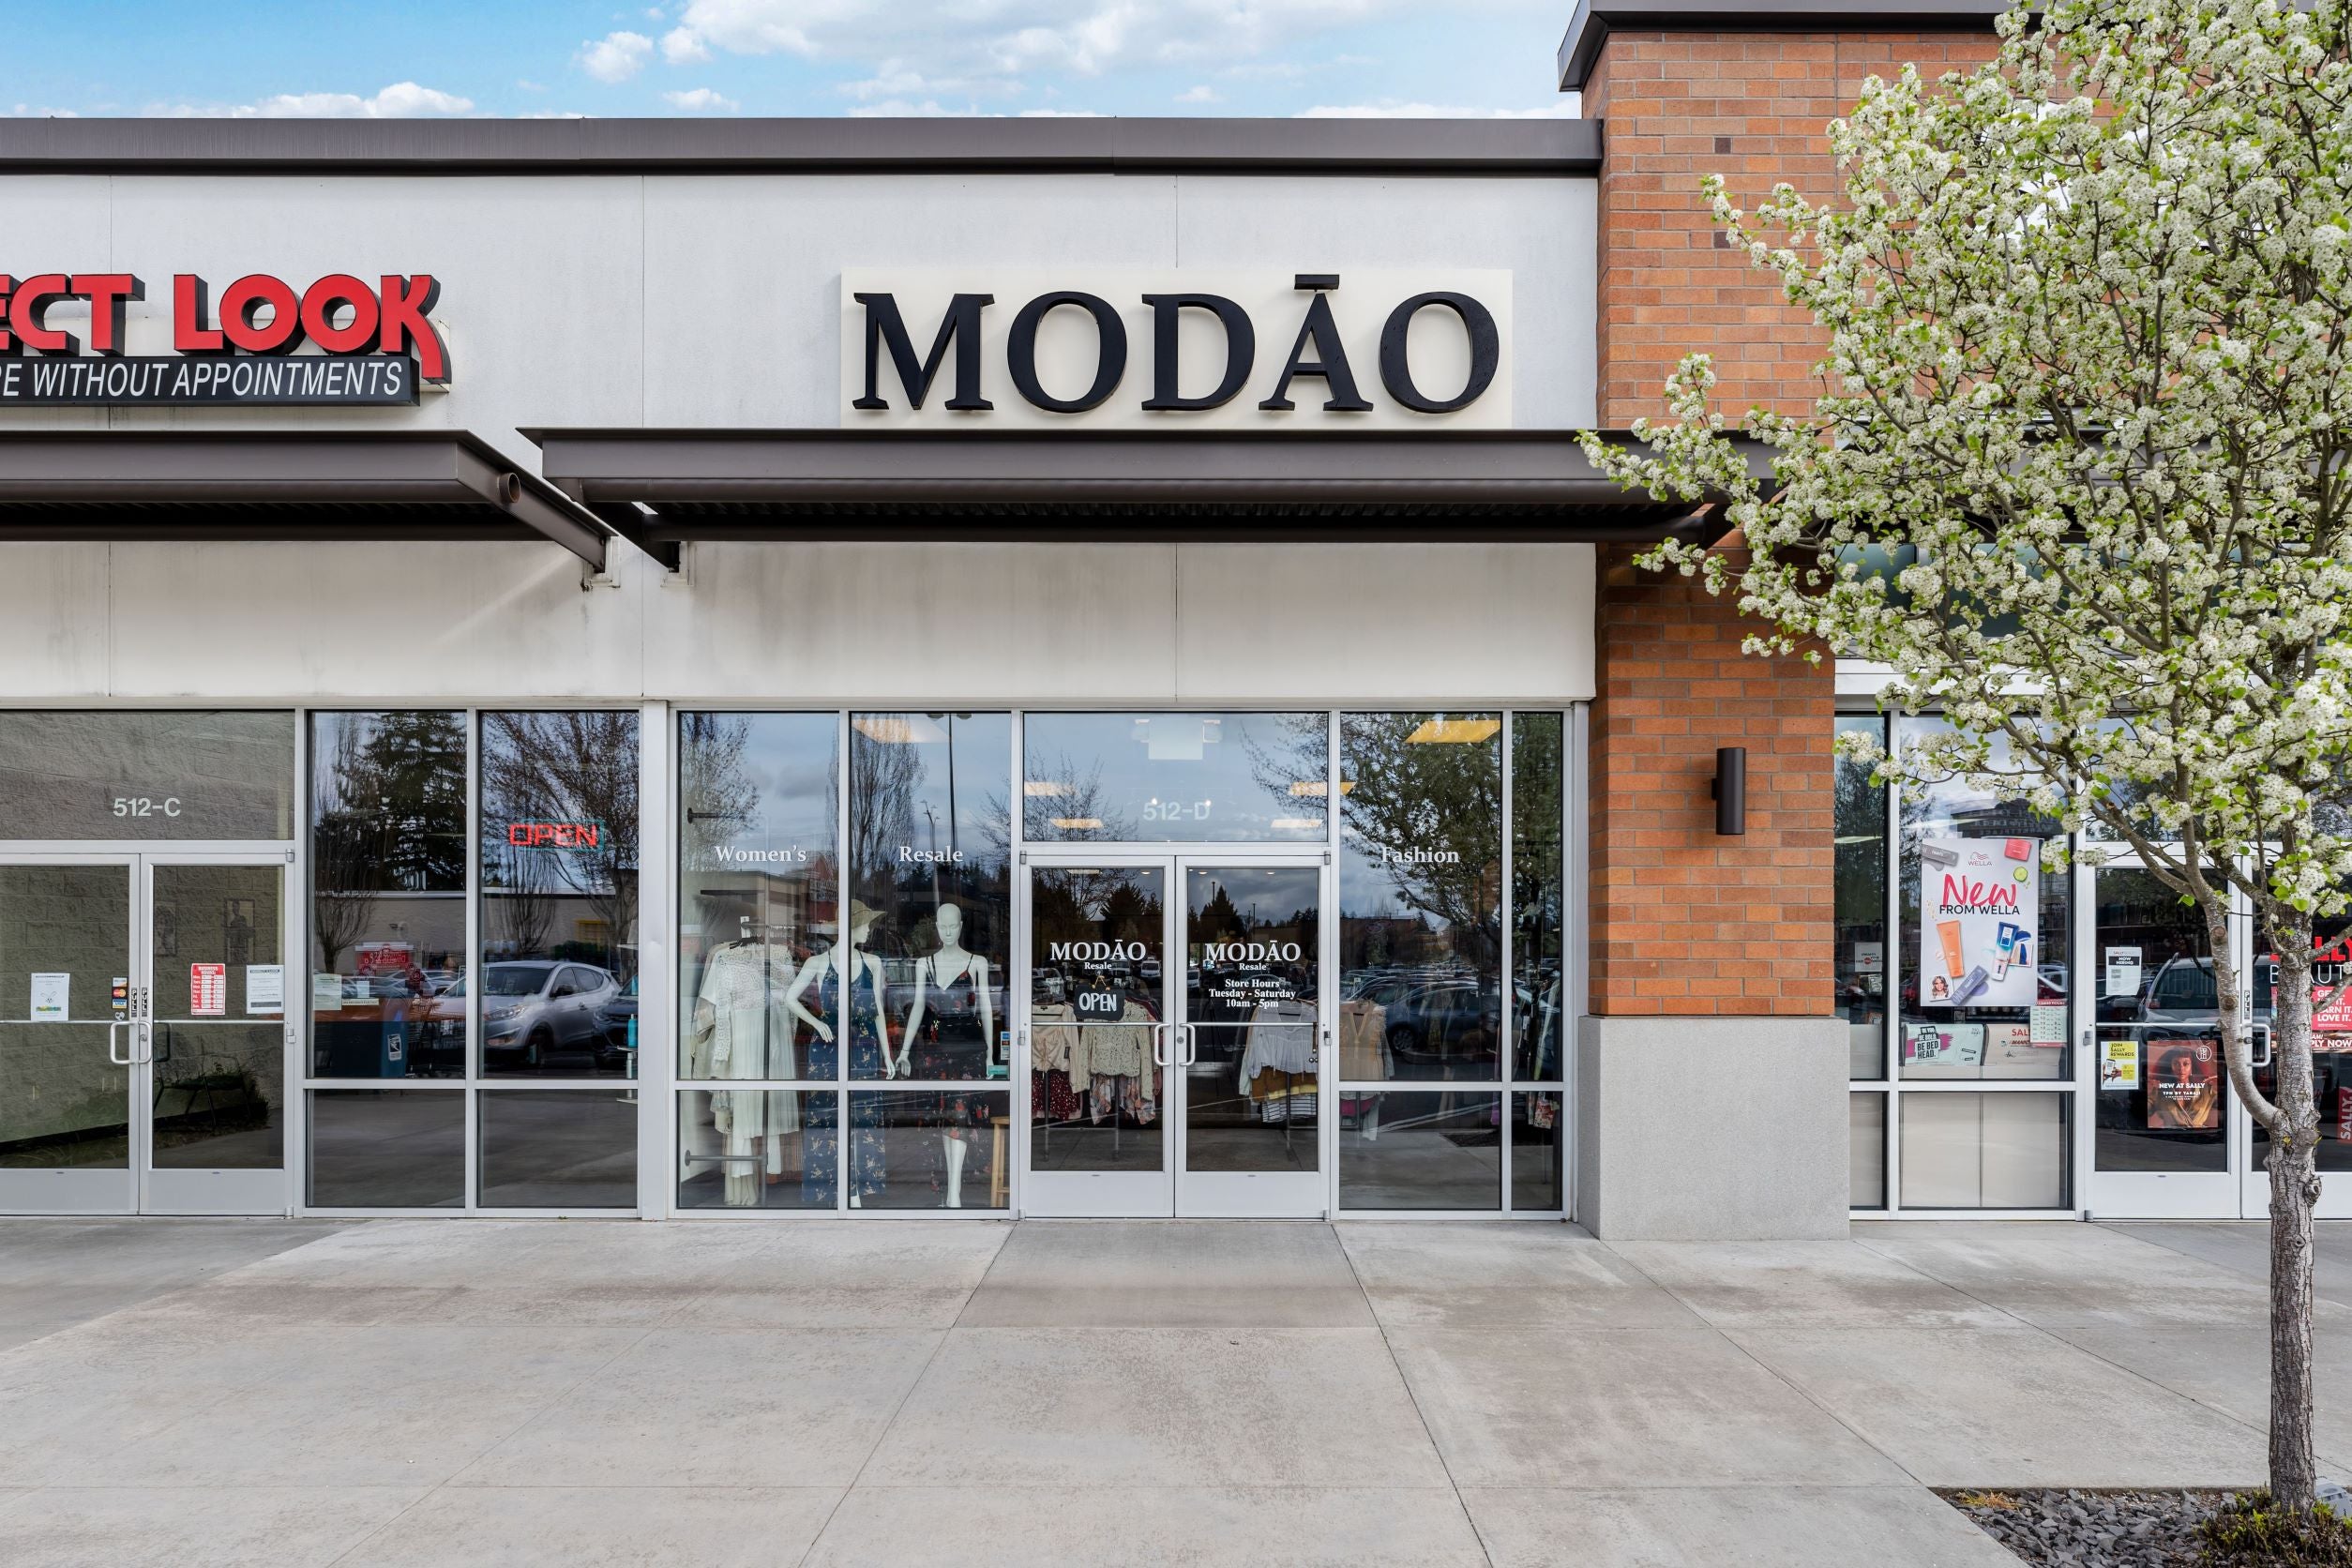 Resale VS Retail – MODAO Resale